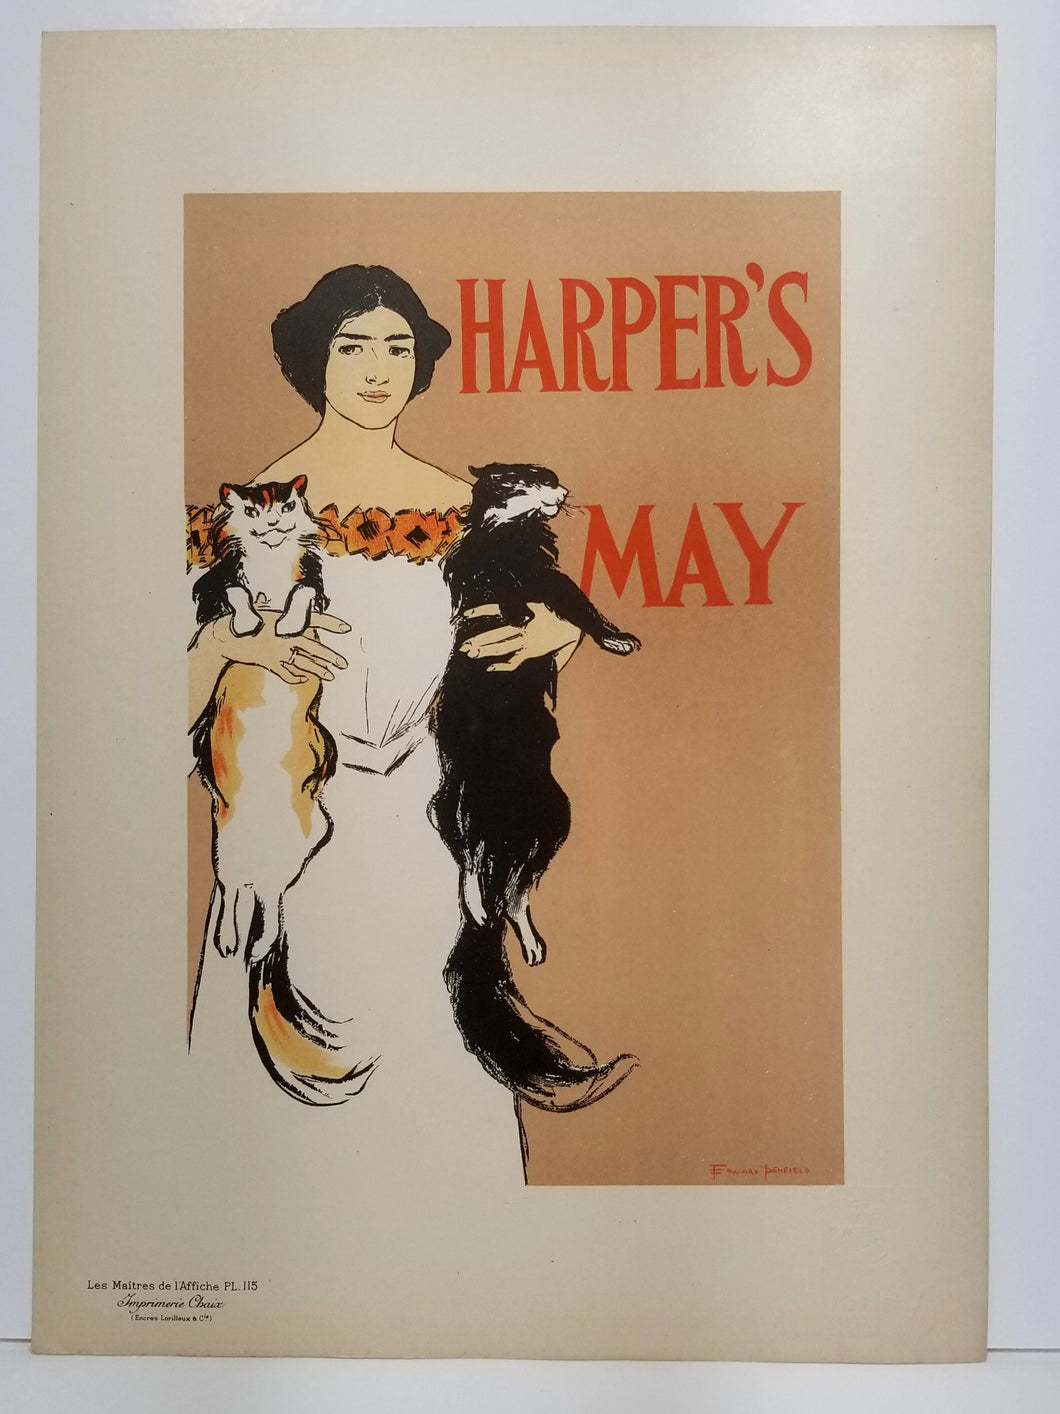 Harper's Magazine. 1897-1898.